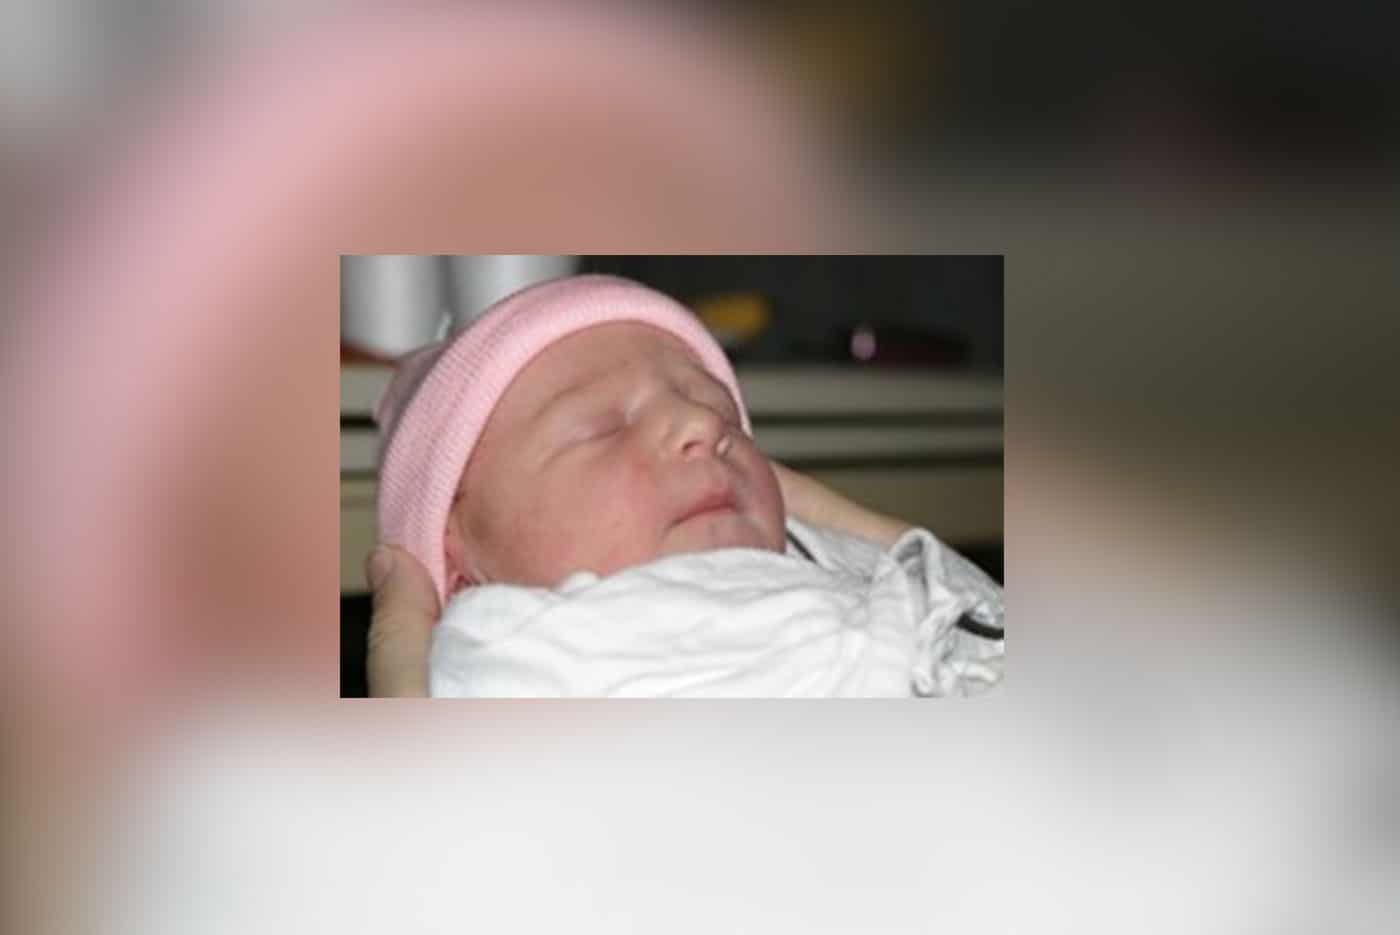 Mesothelioma survivor Heather Von St. James' infant daughter Lily